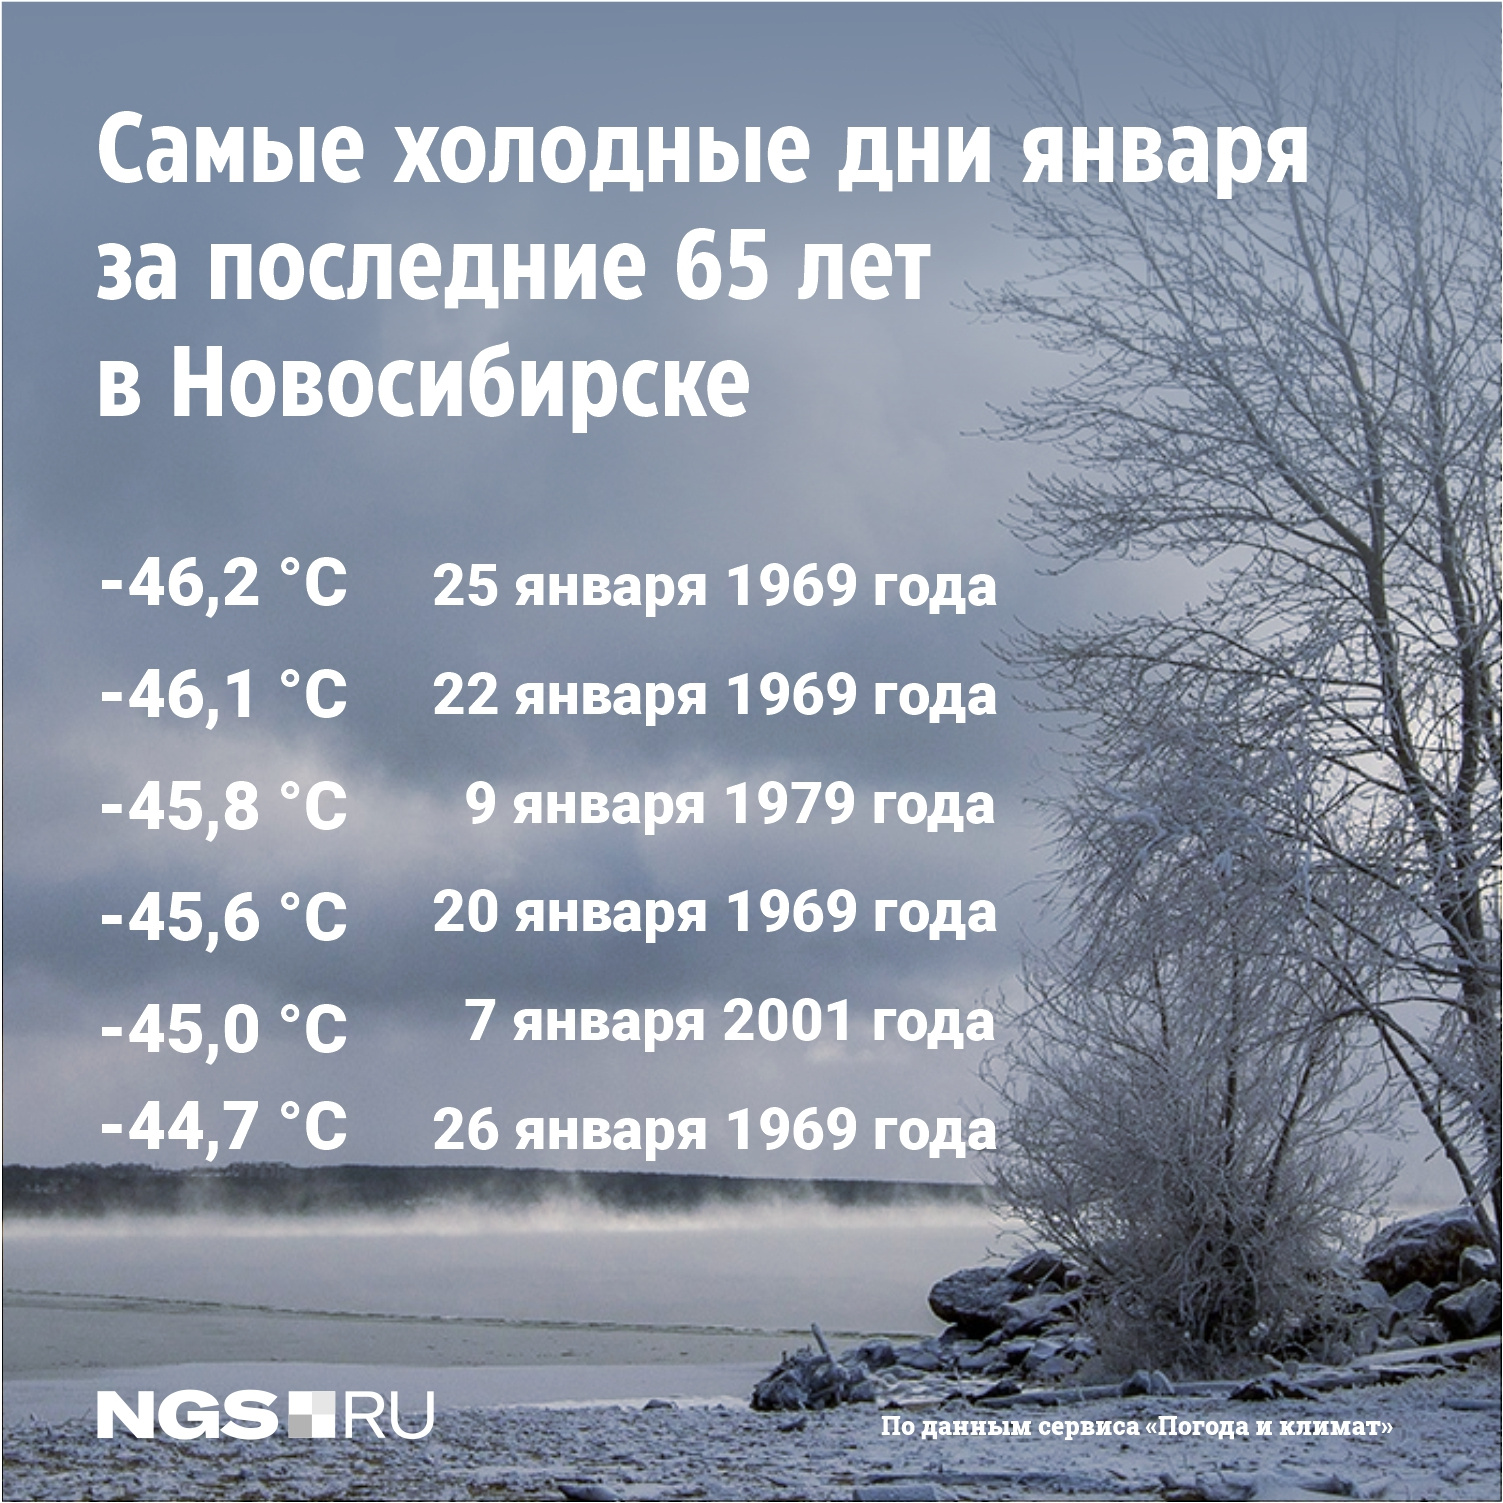 Сколько холодно то. Холодный морозный день. Новосибирск холодно. Холодный январь. Интересные даты.